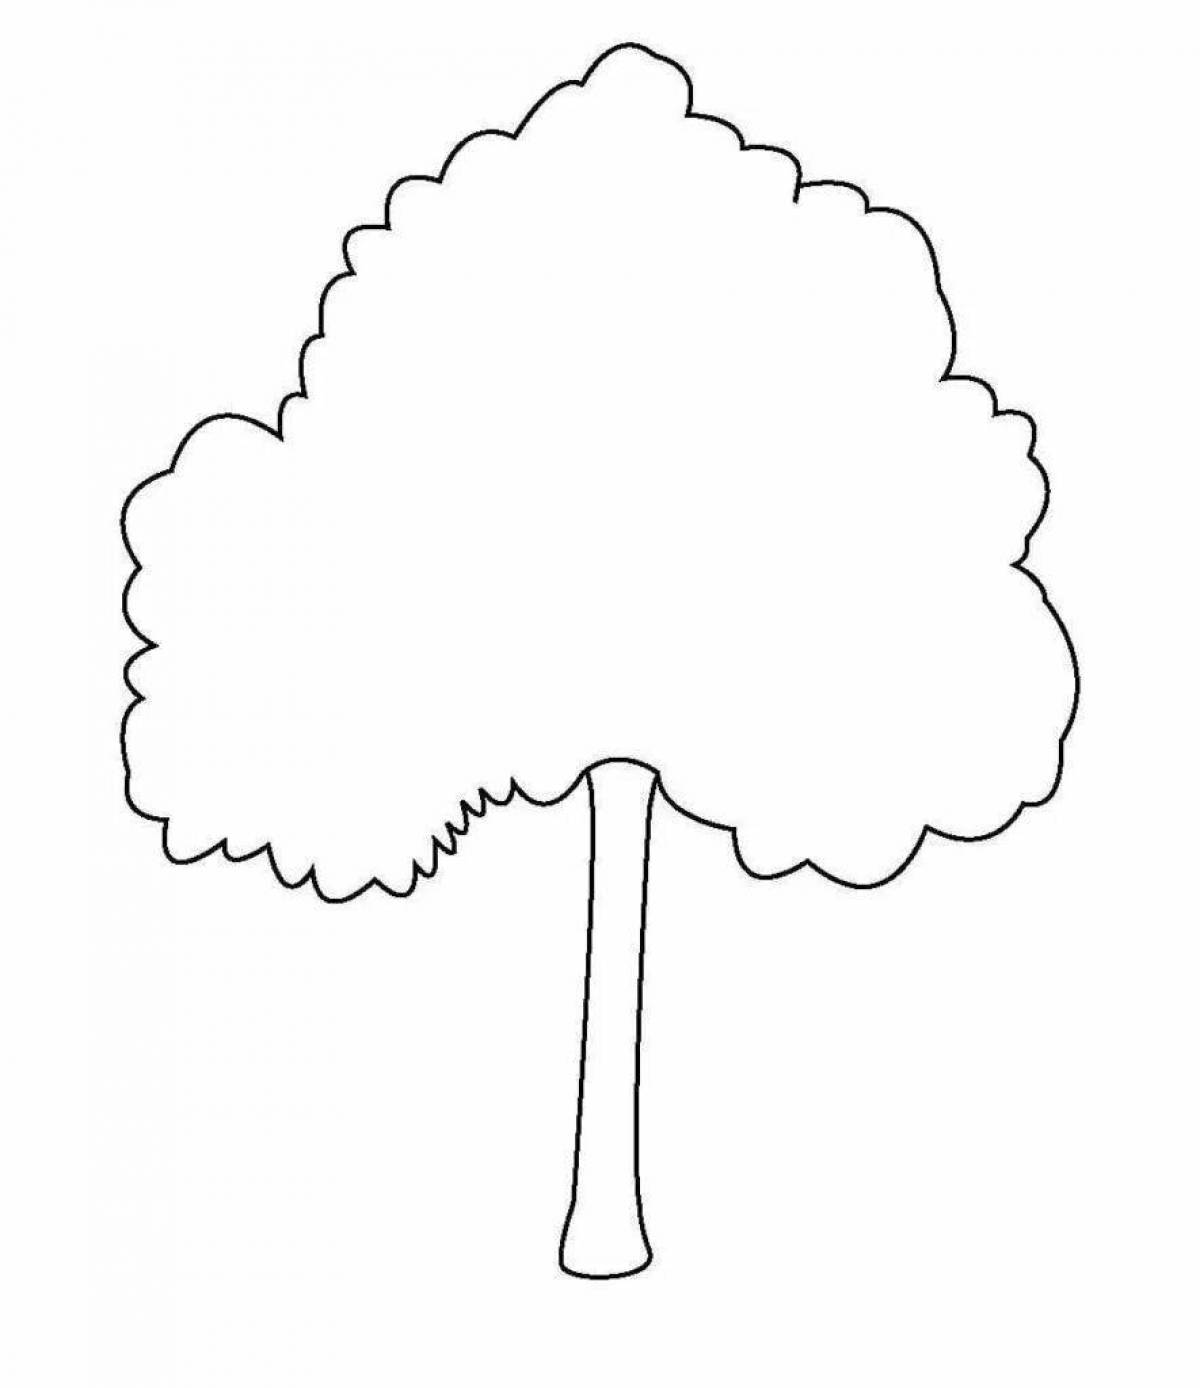 Причудливая раскраска зимнего дерева для детей 3-4 лет